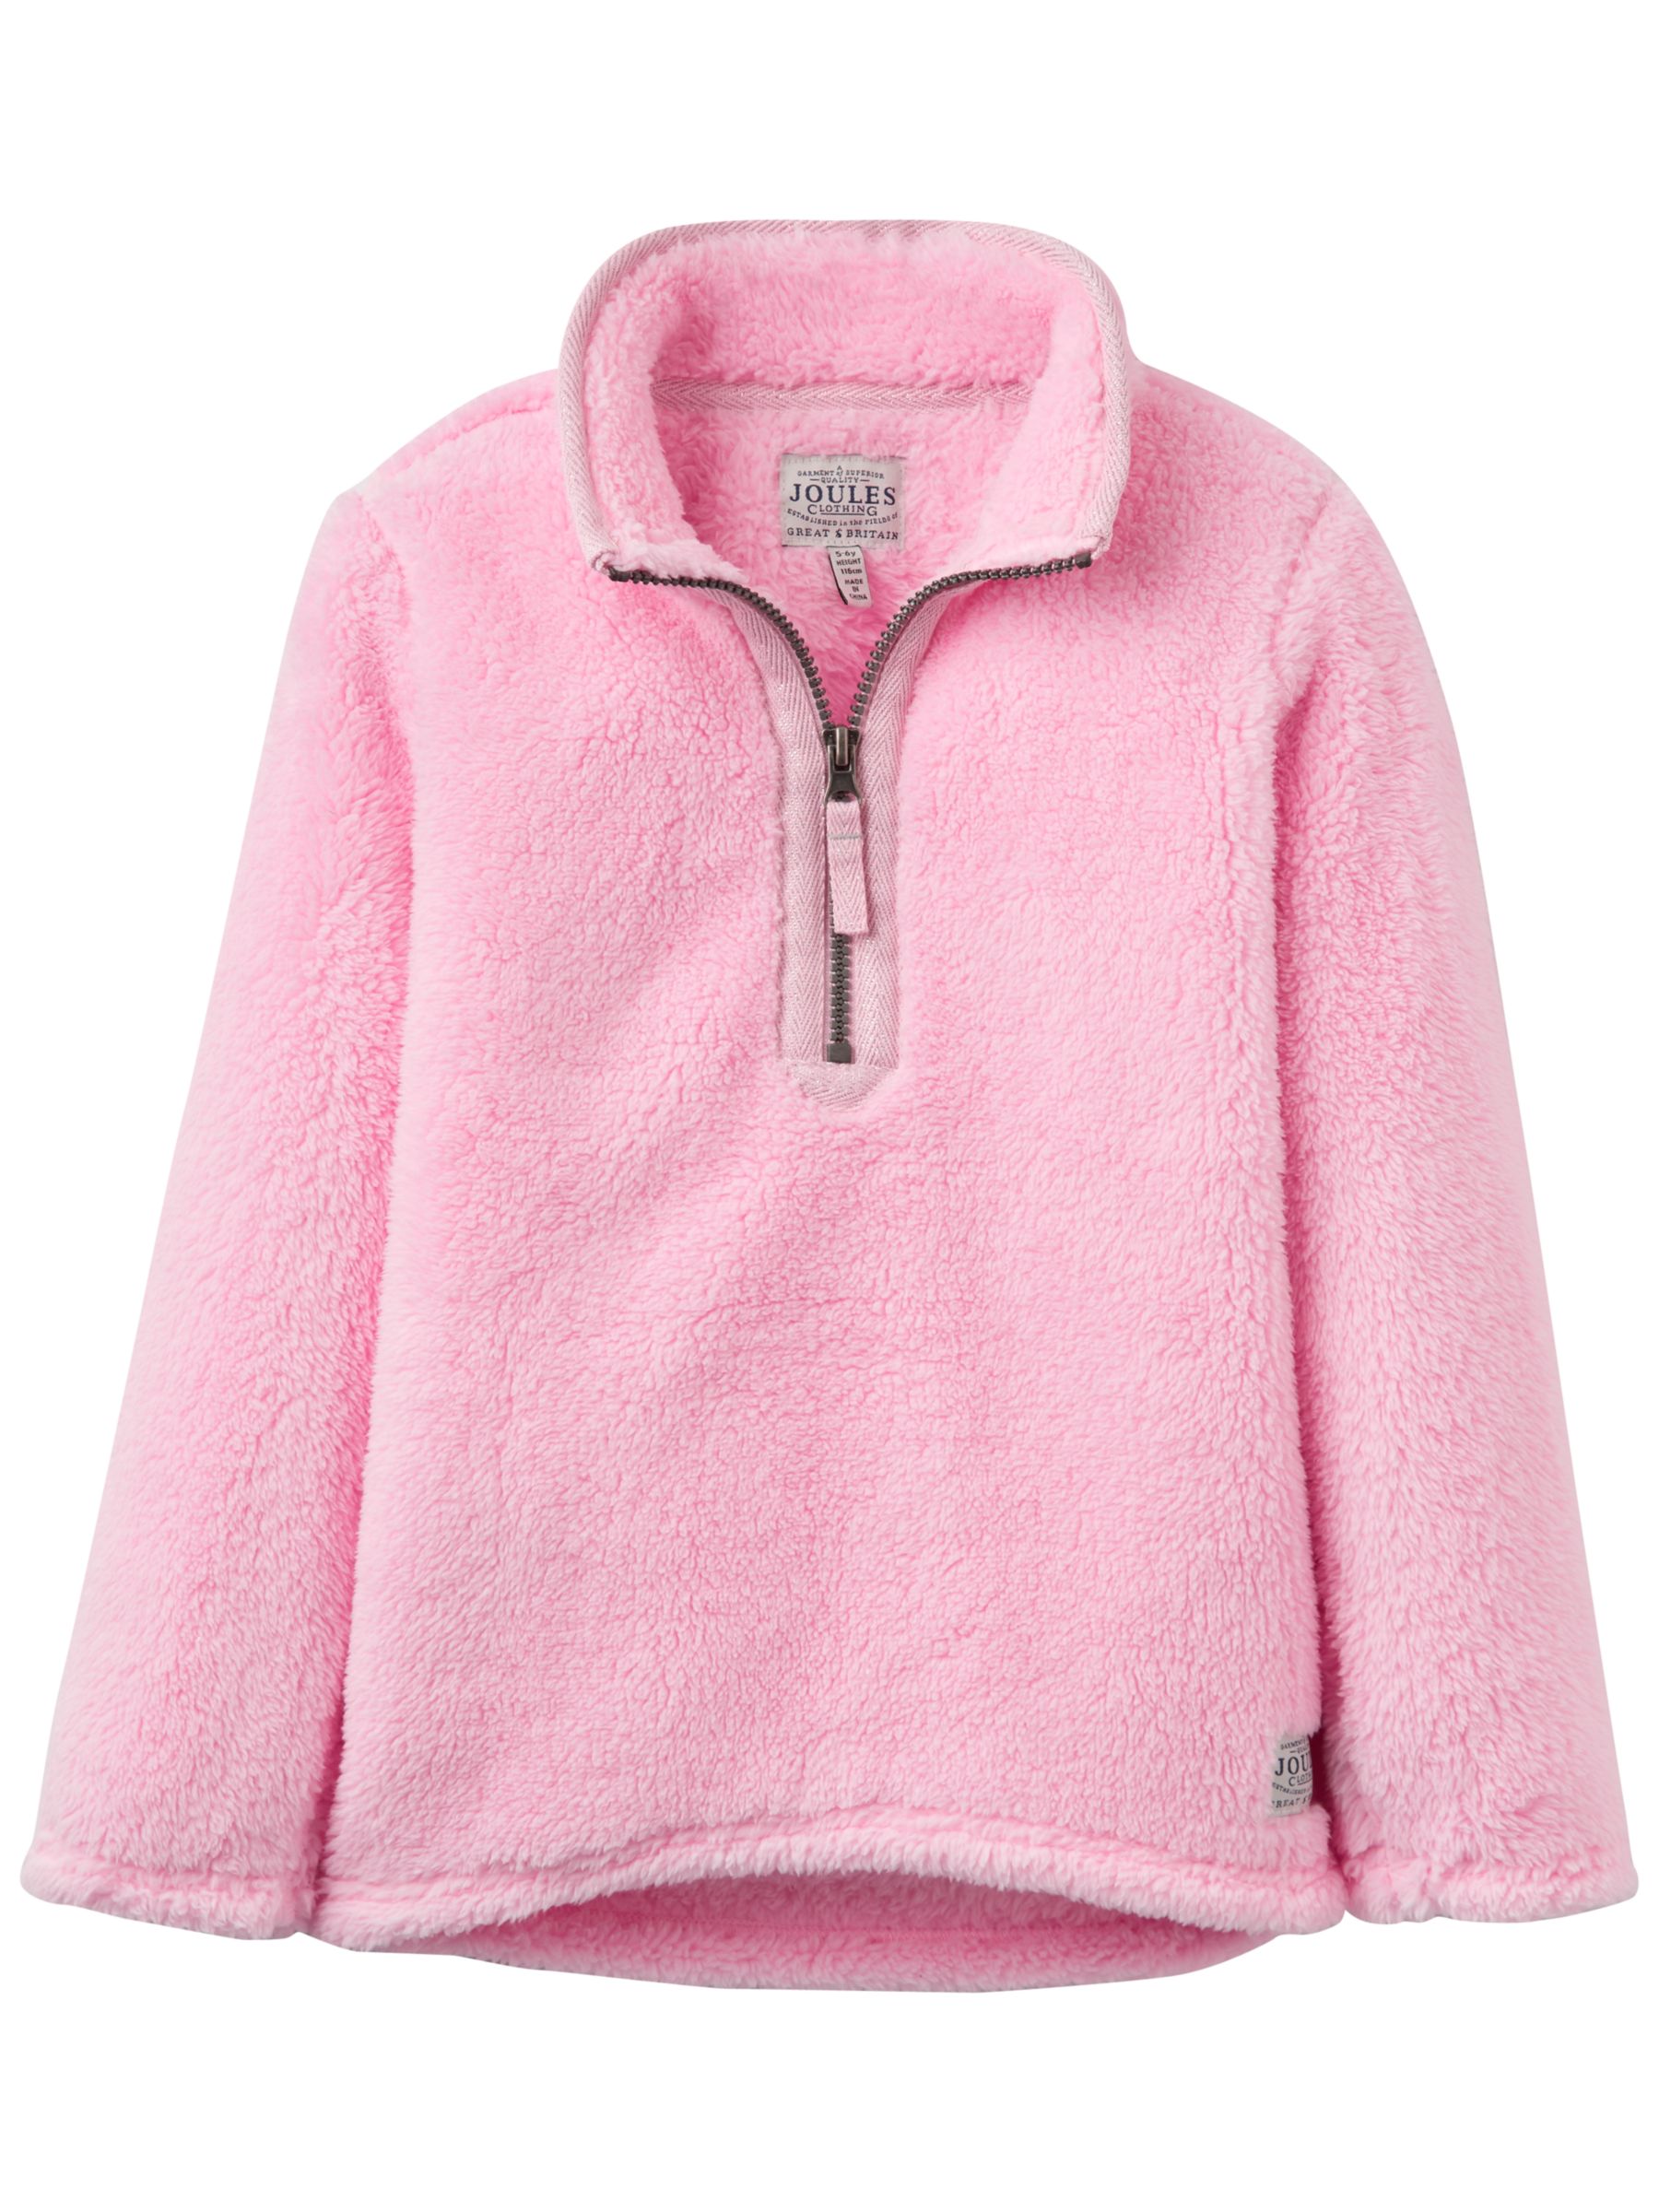 pink half zip fleece